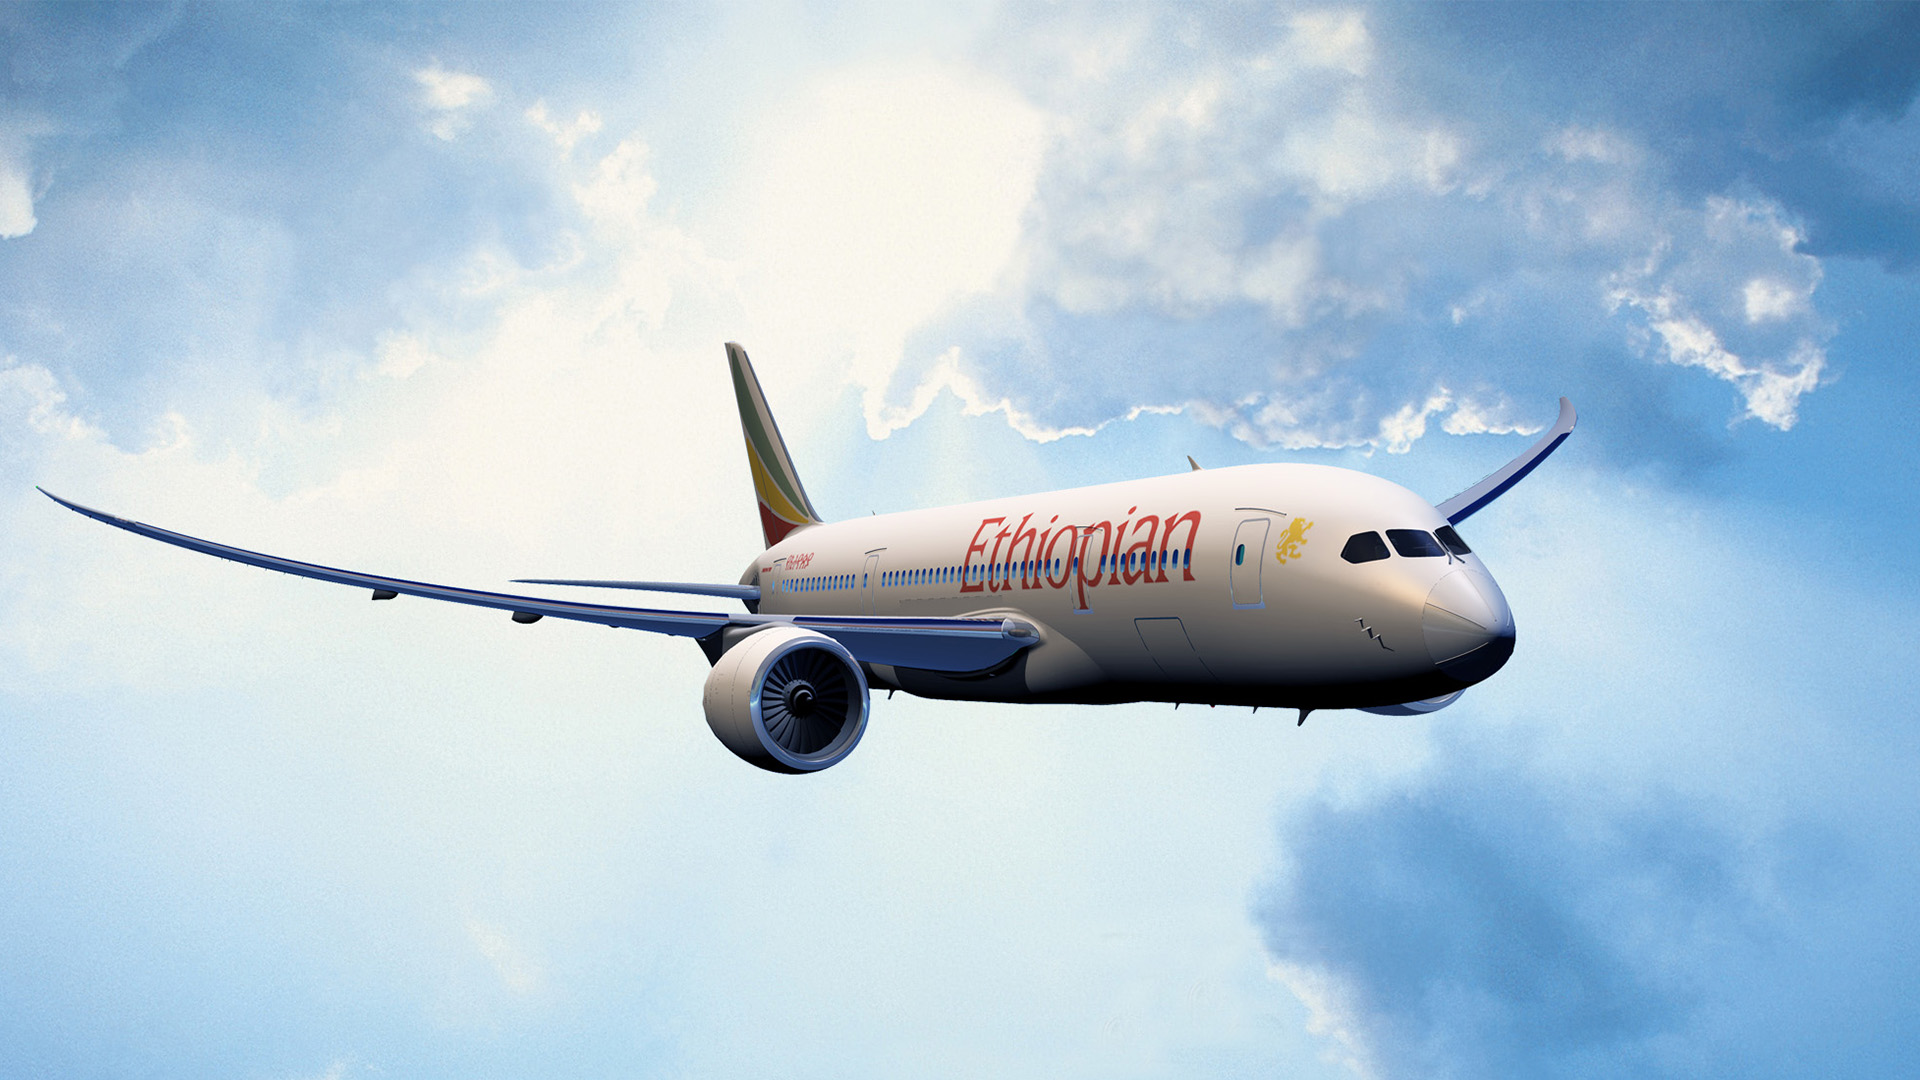 Saviez-vous qu'Ethiopian Airlines est la 1ère compagnie aérienne africaine depuis 6 années consécutives ? 